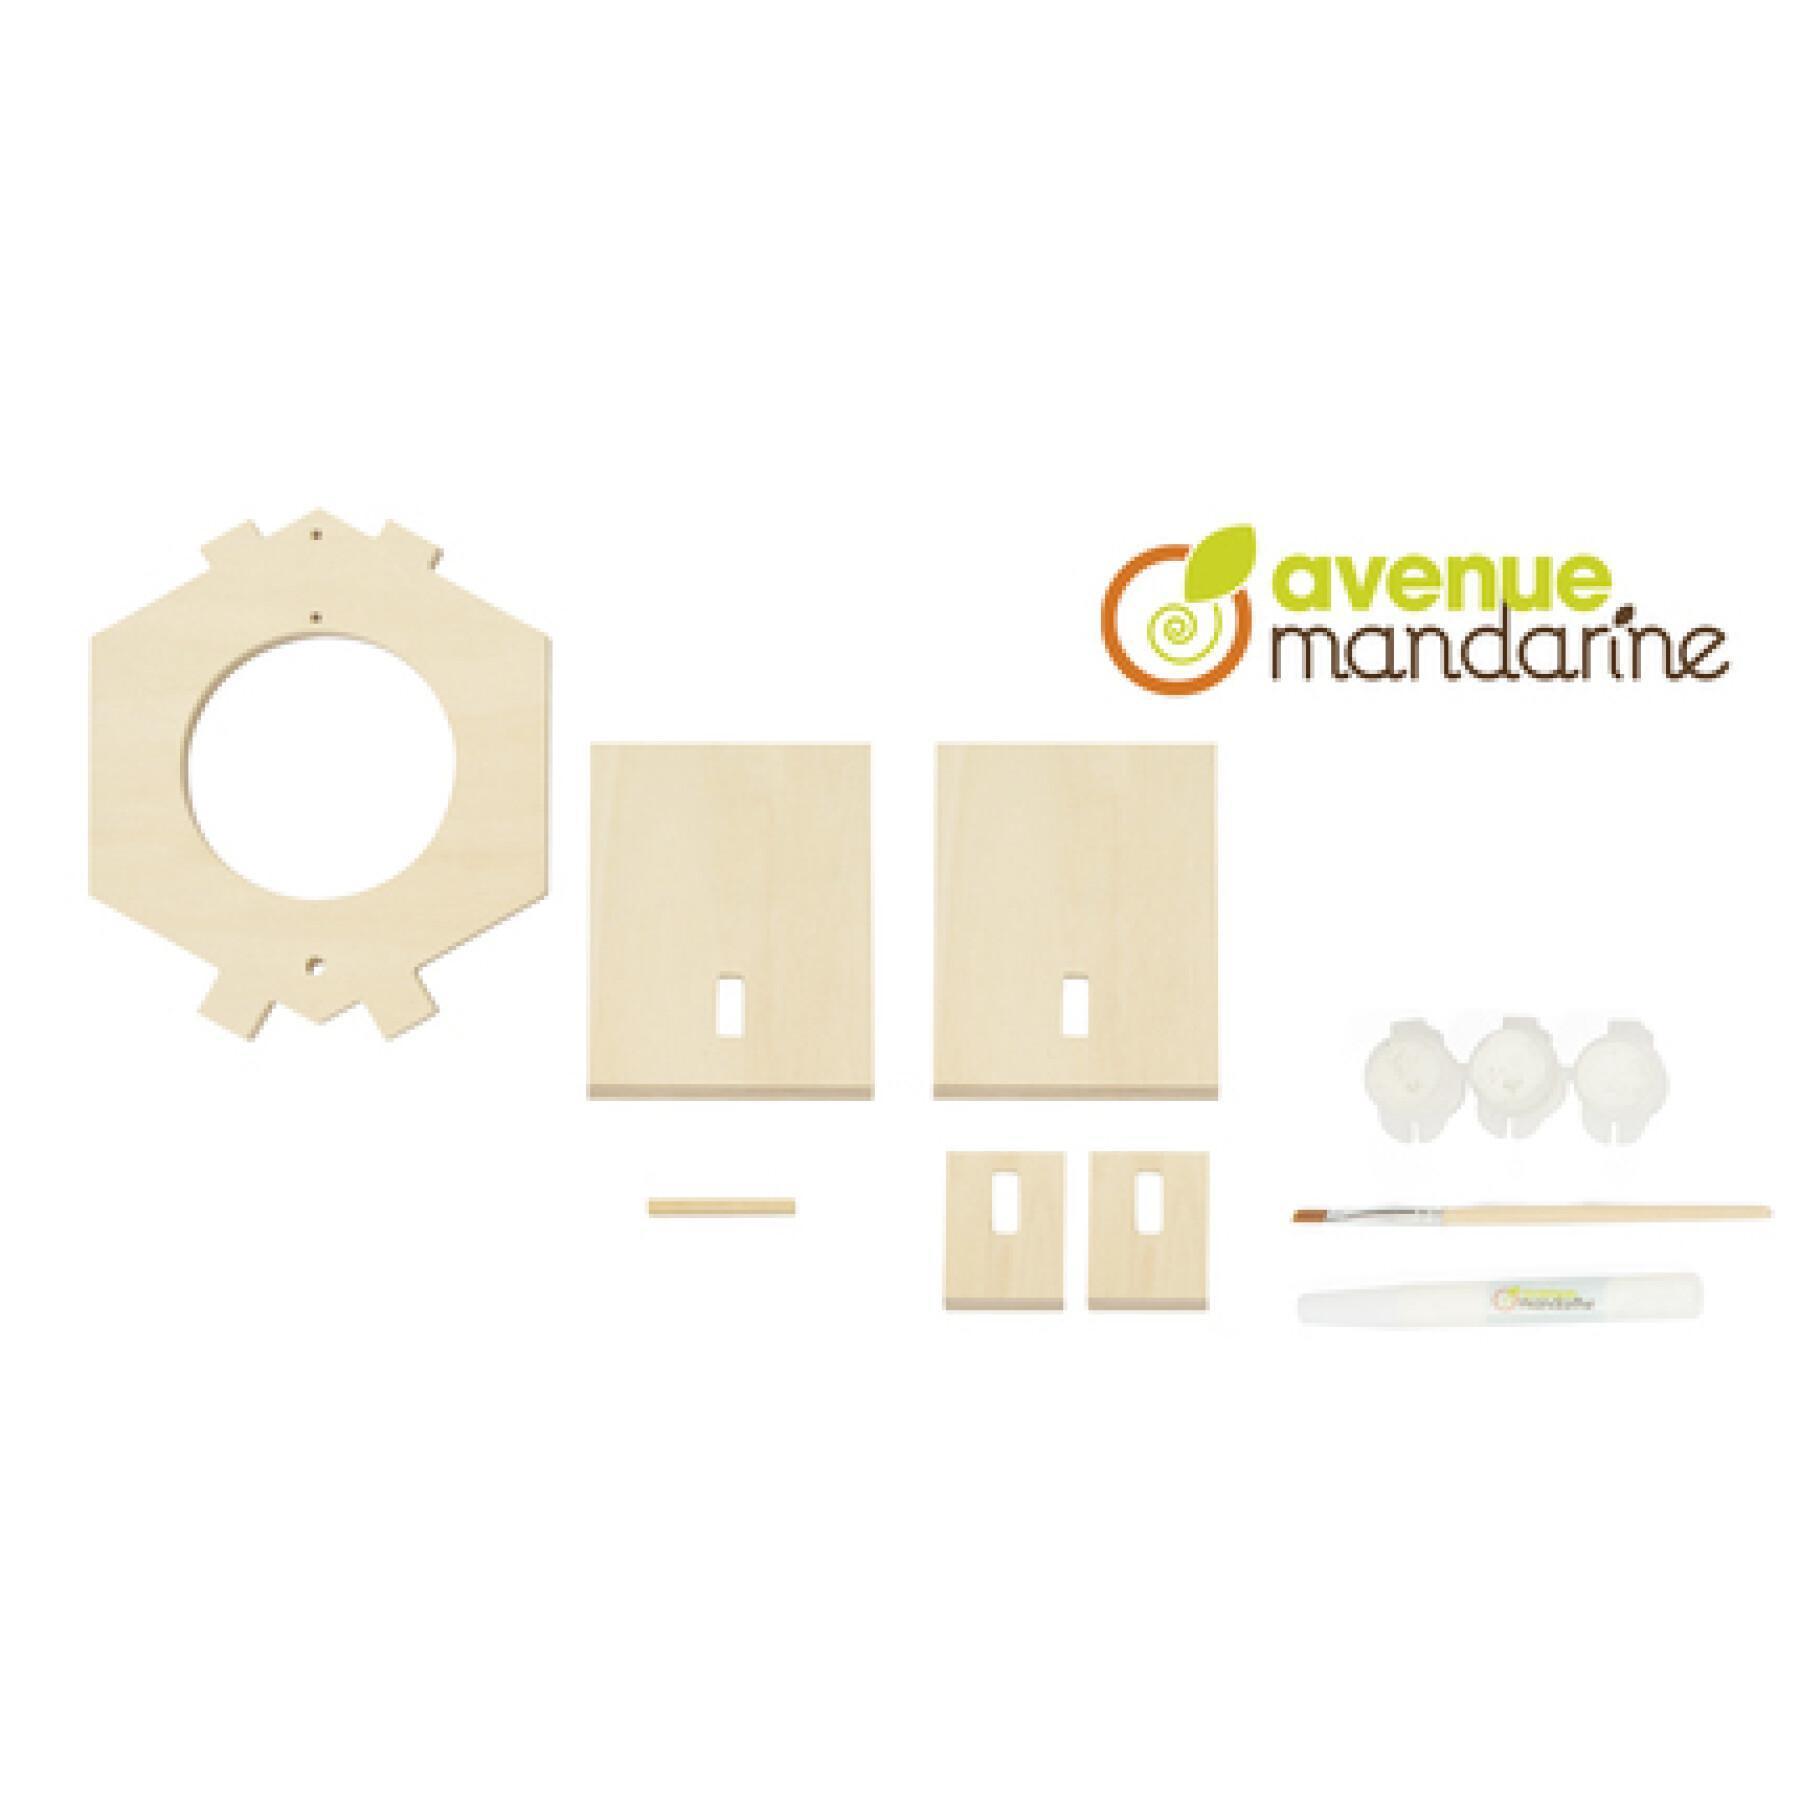 Caixa de alimentação criativa a construir Avenue Mandarine